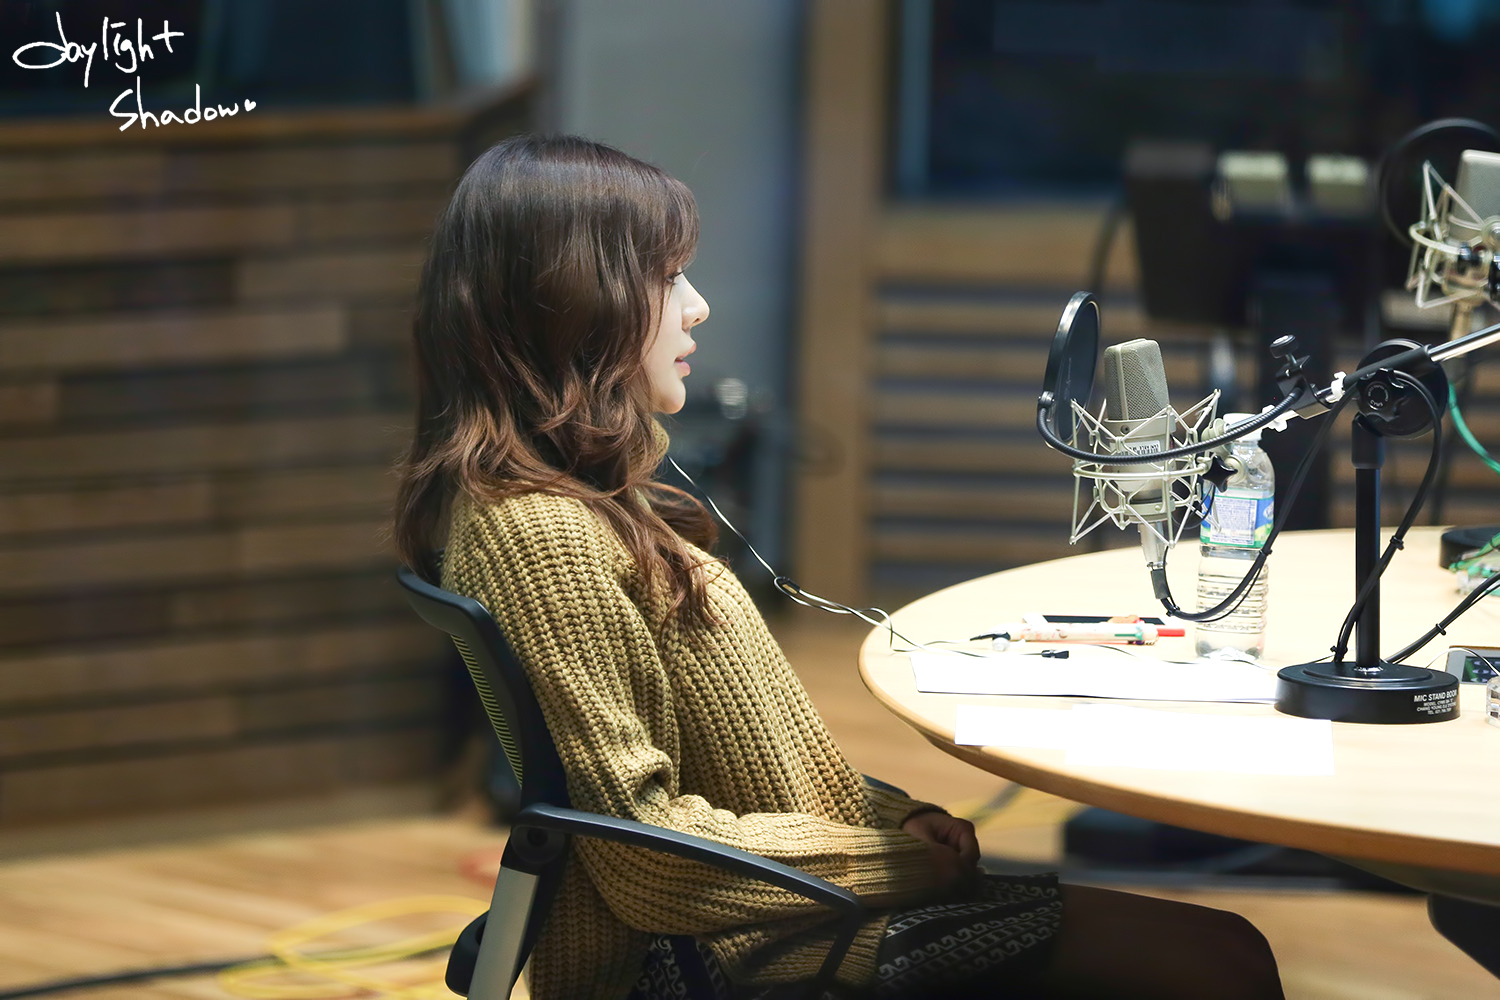 [OTHER][06-02-2015]Hình ảnh mới nhất từ DJ Sunny tại Radio MBC FM4U - "FM Date" - Page 32 2220EE3E56A0B2C5213C0C